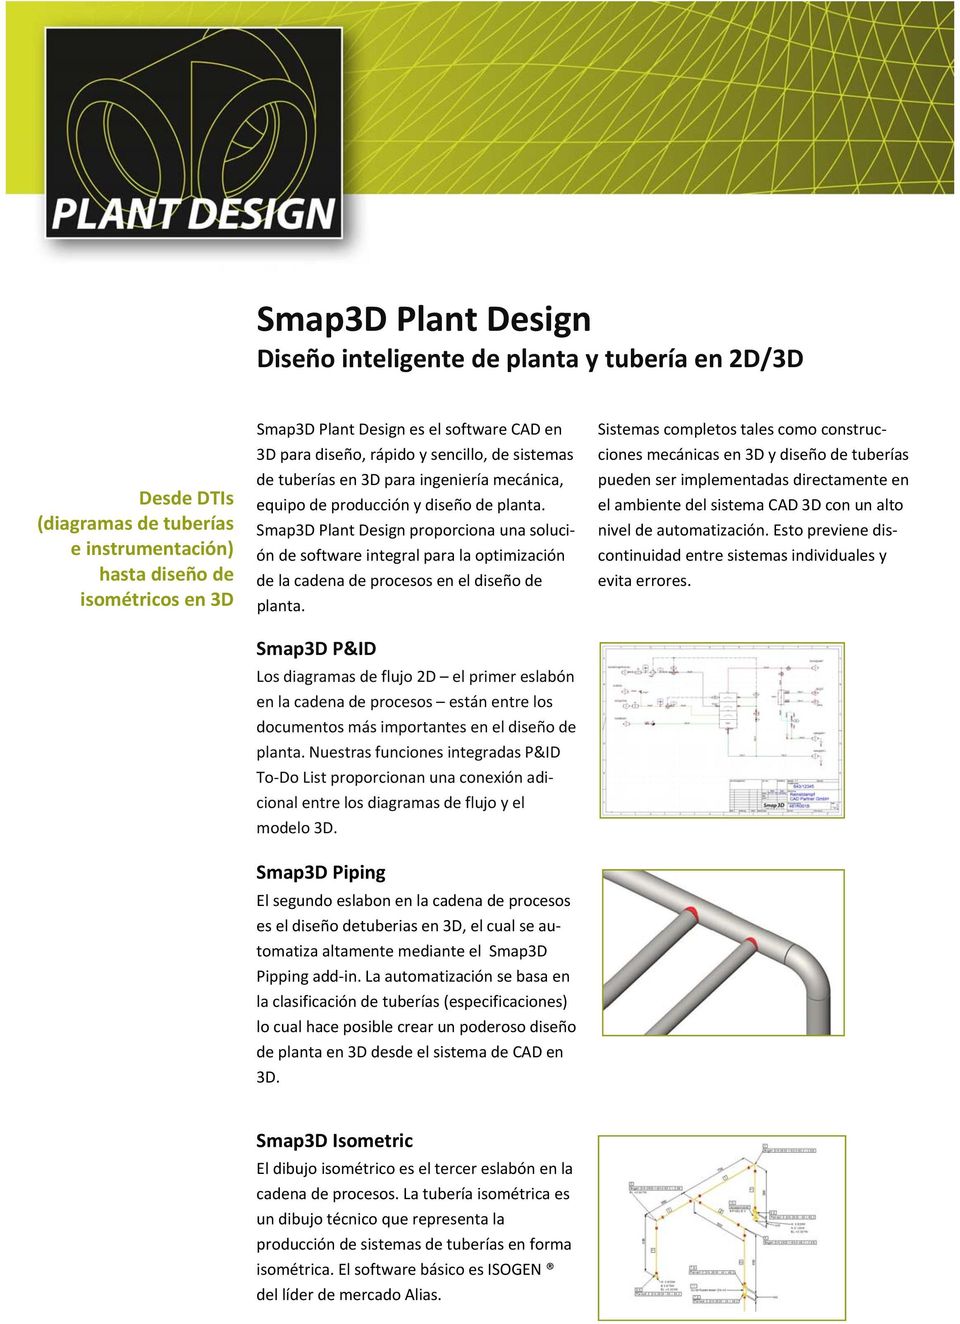 Smap3D Plant Design proporciona una solución de software integral para la optimización de la cadena de procesos en el diseño de planta.